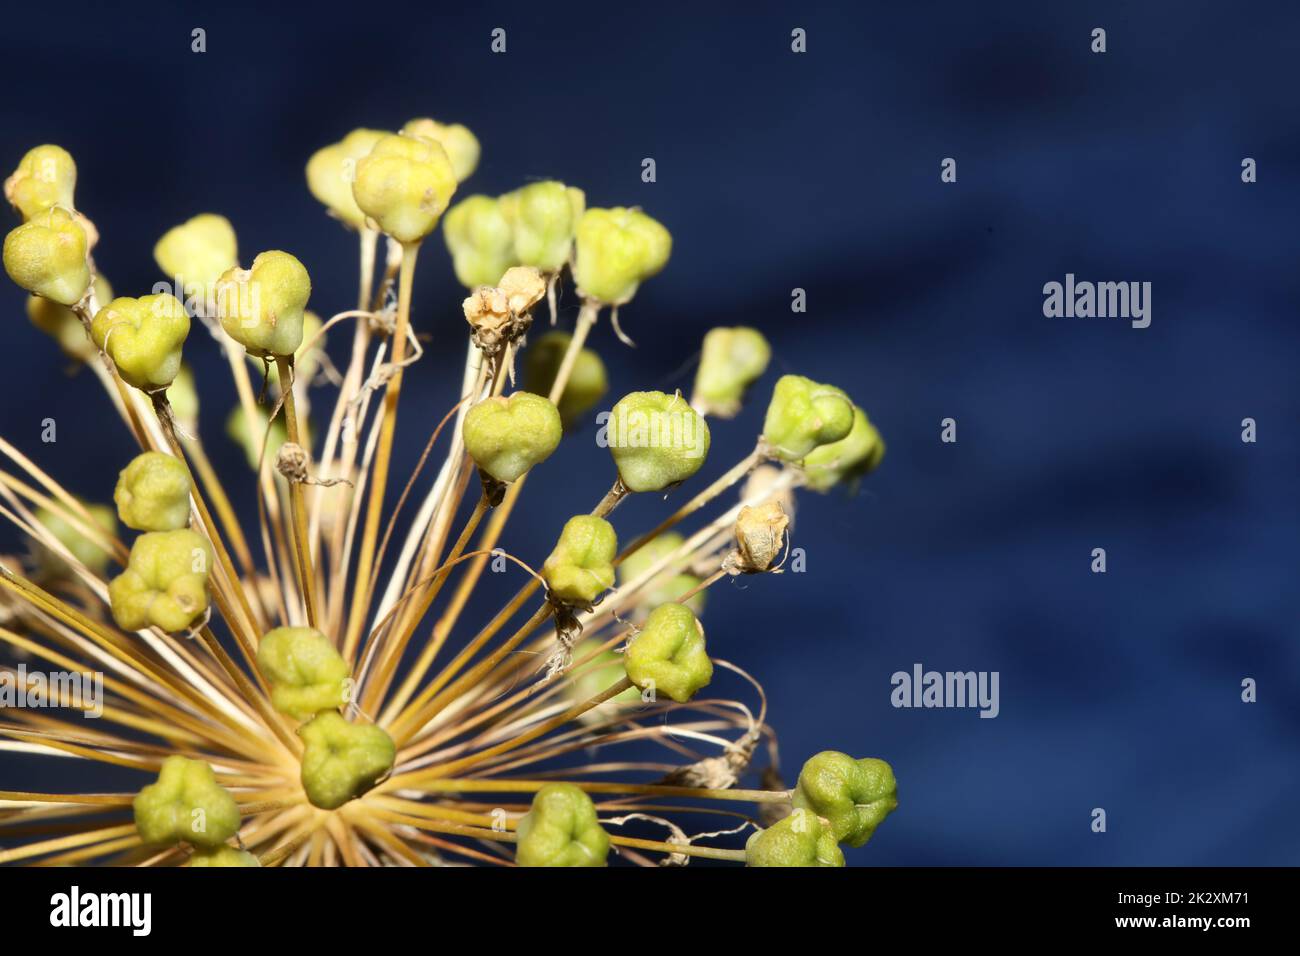 Flower blossom close up botanical background allium nigrum family amaryllidaceae high quality big size prints Stock Photo